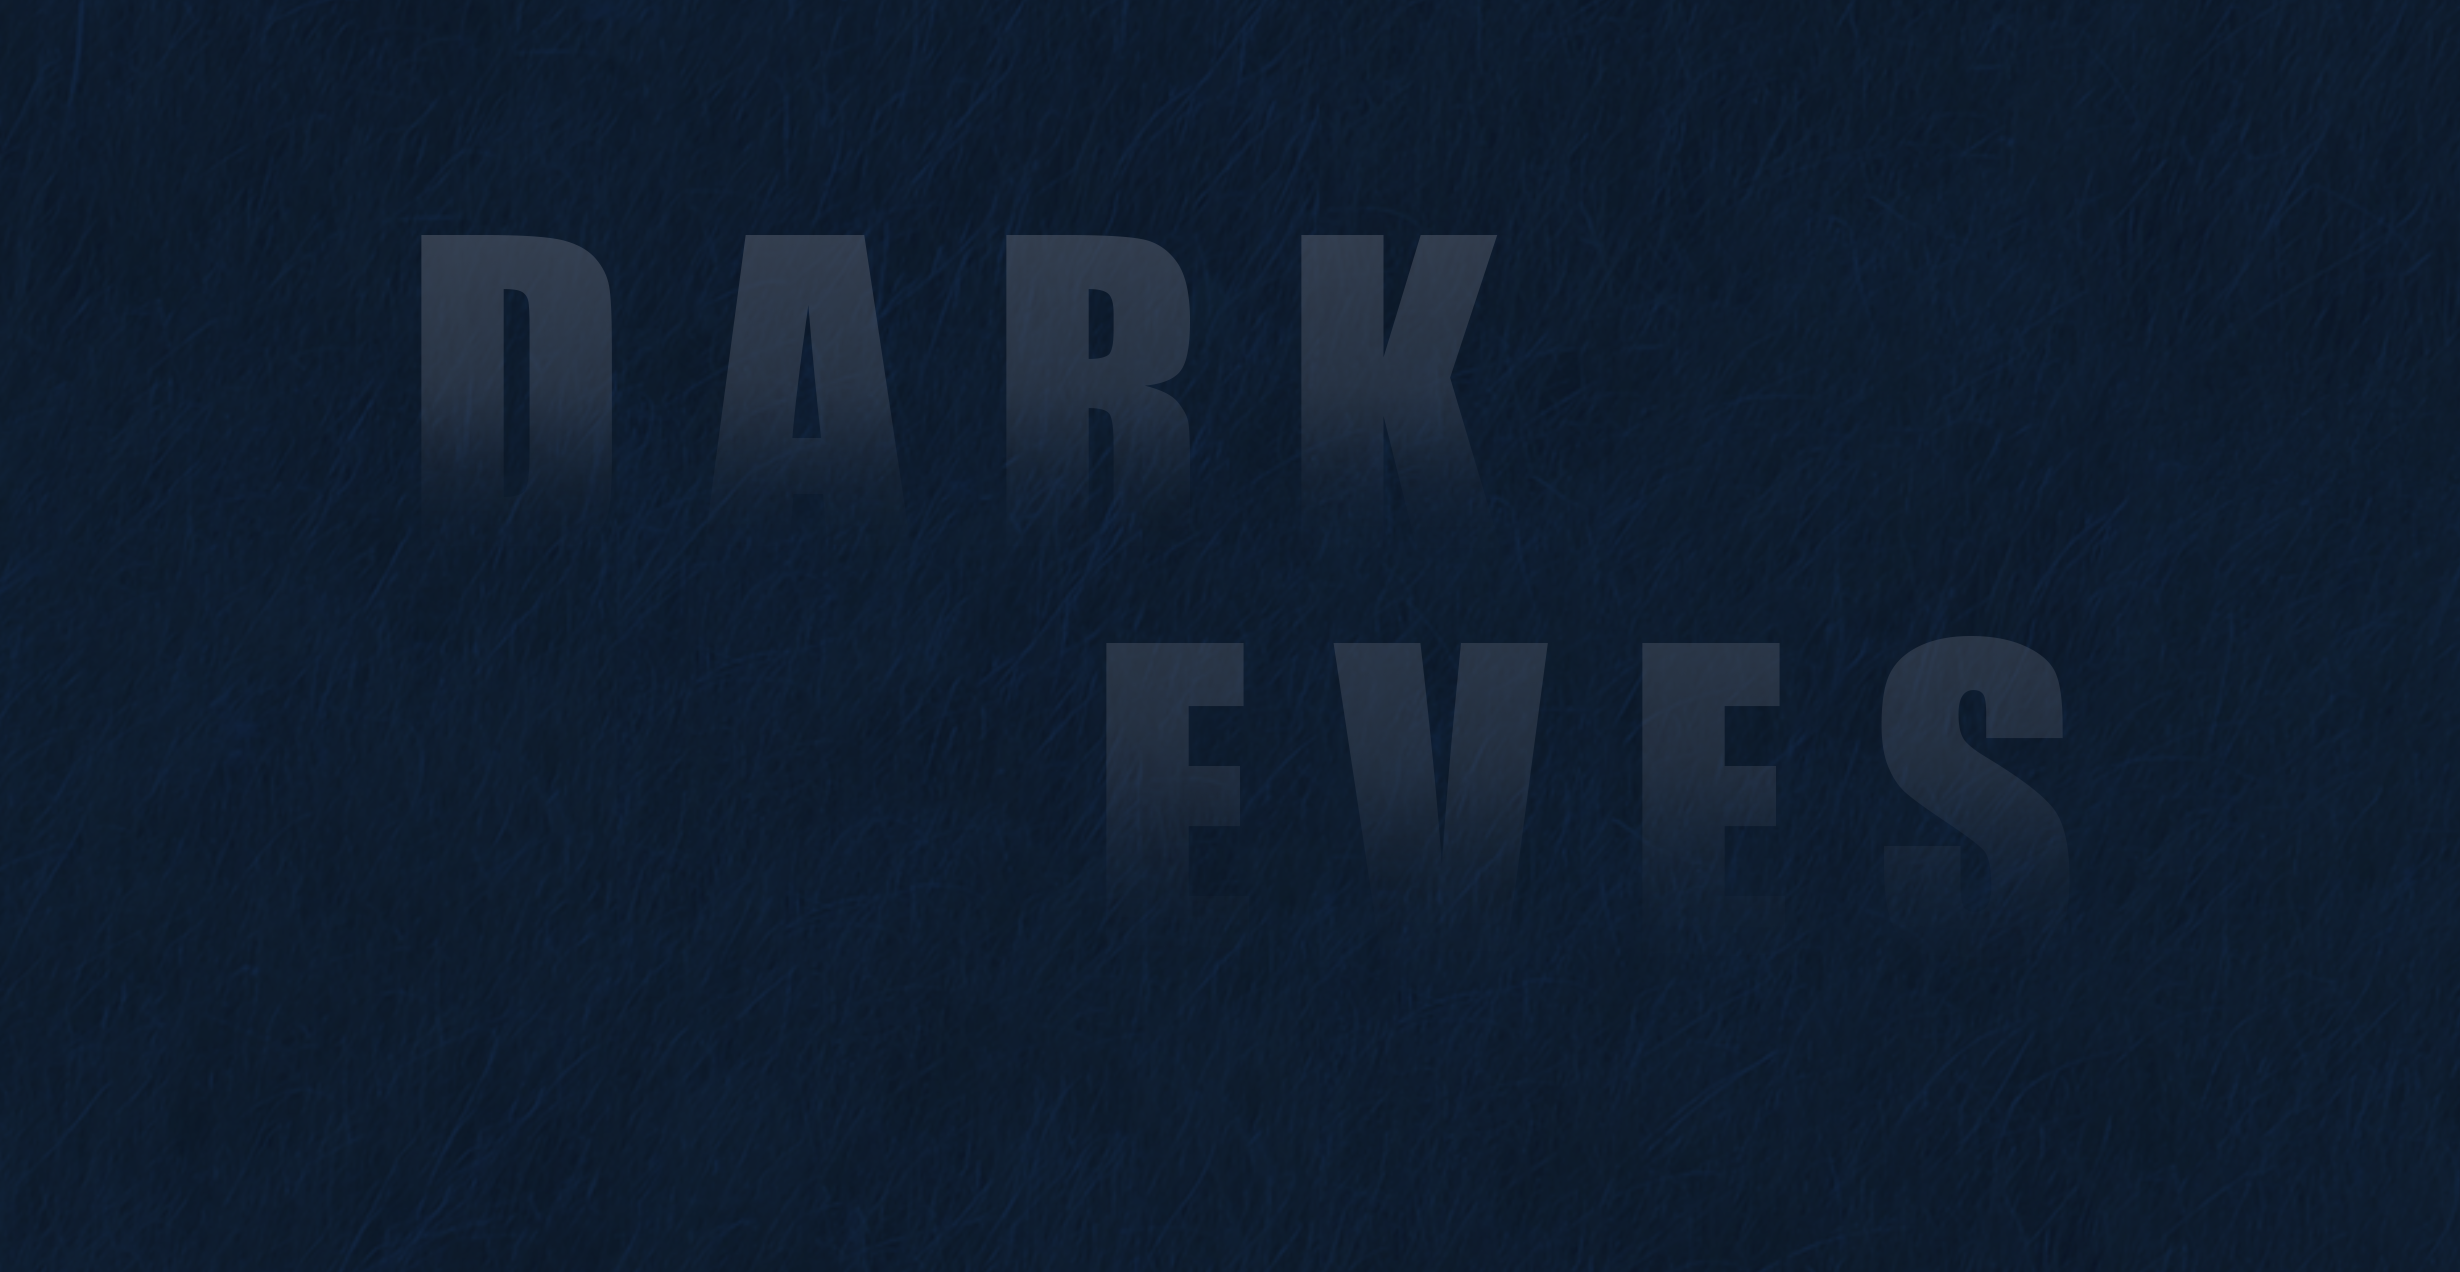 Dark Eves